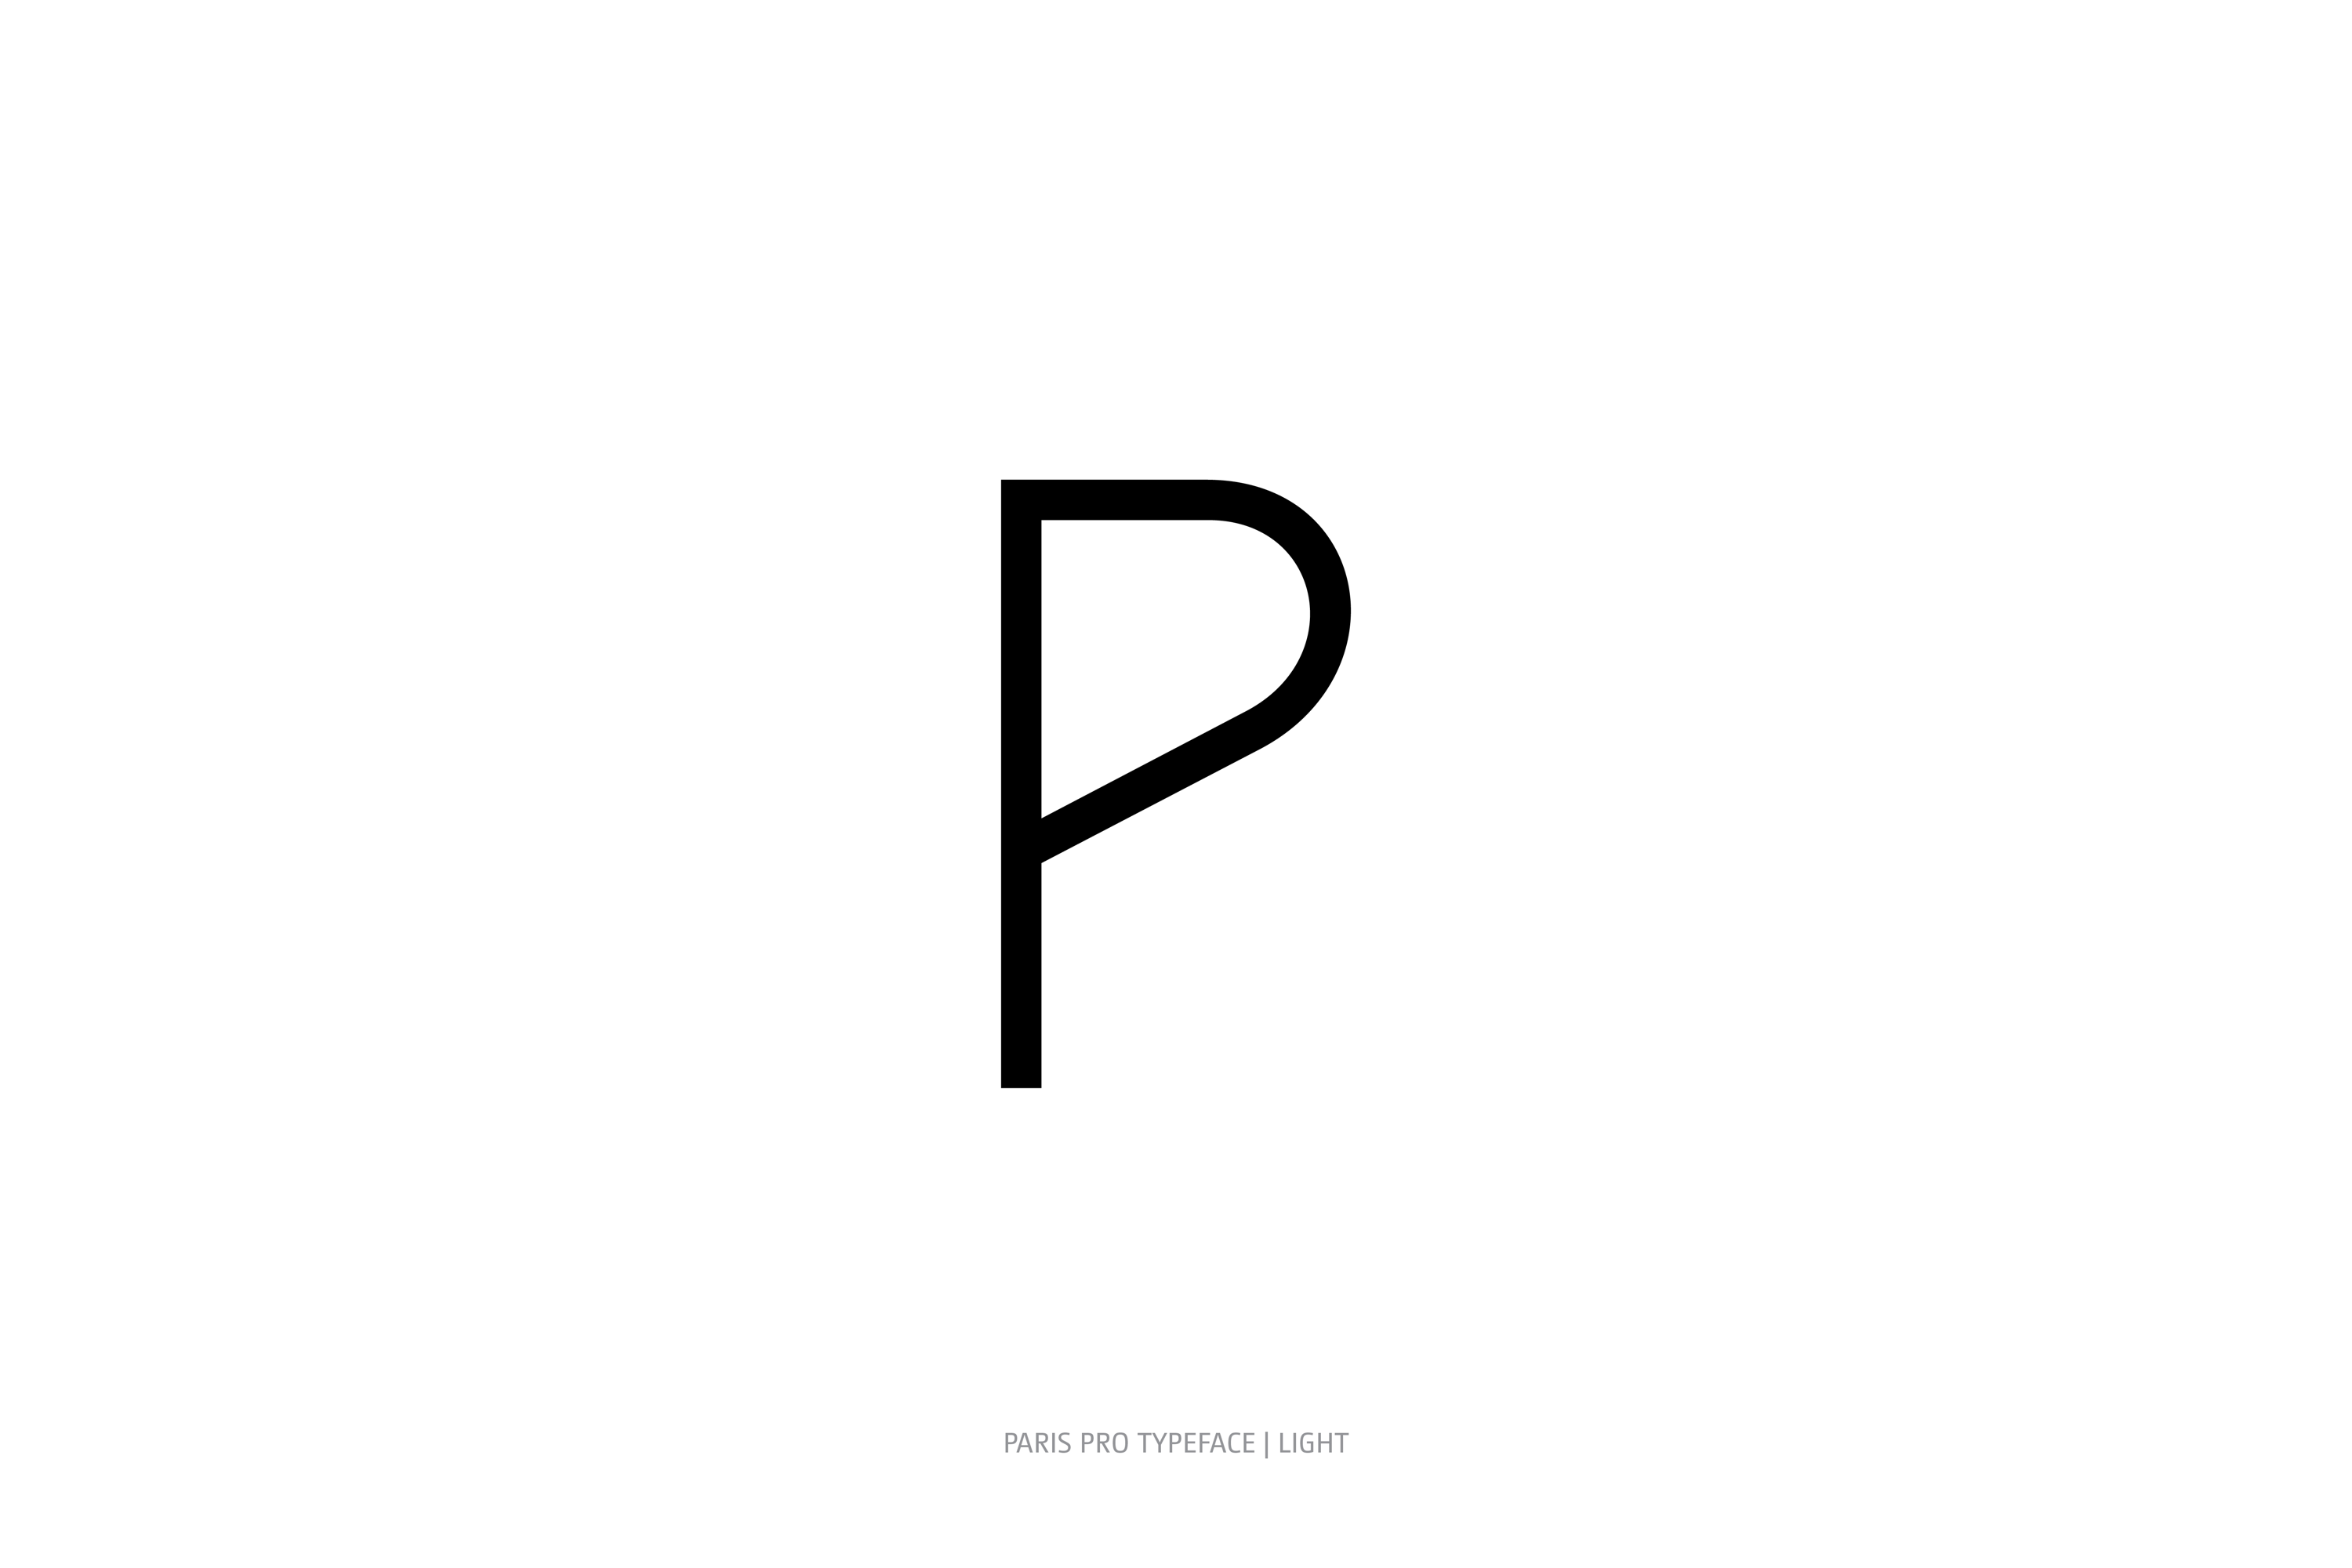 Paris Pro Typeface Light Style P